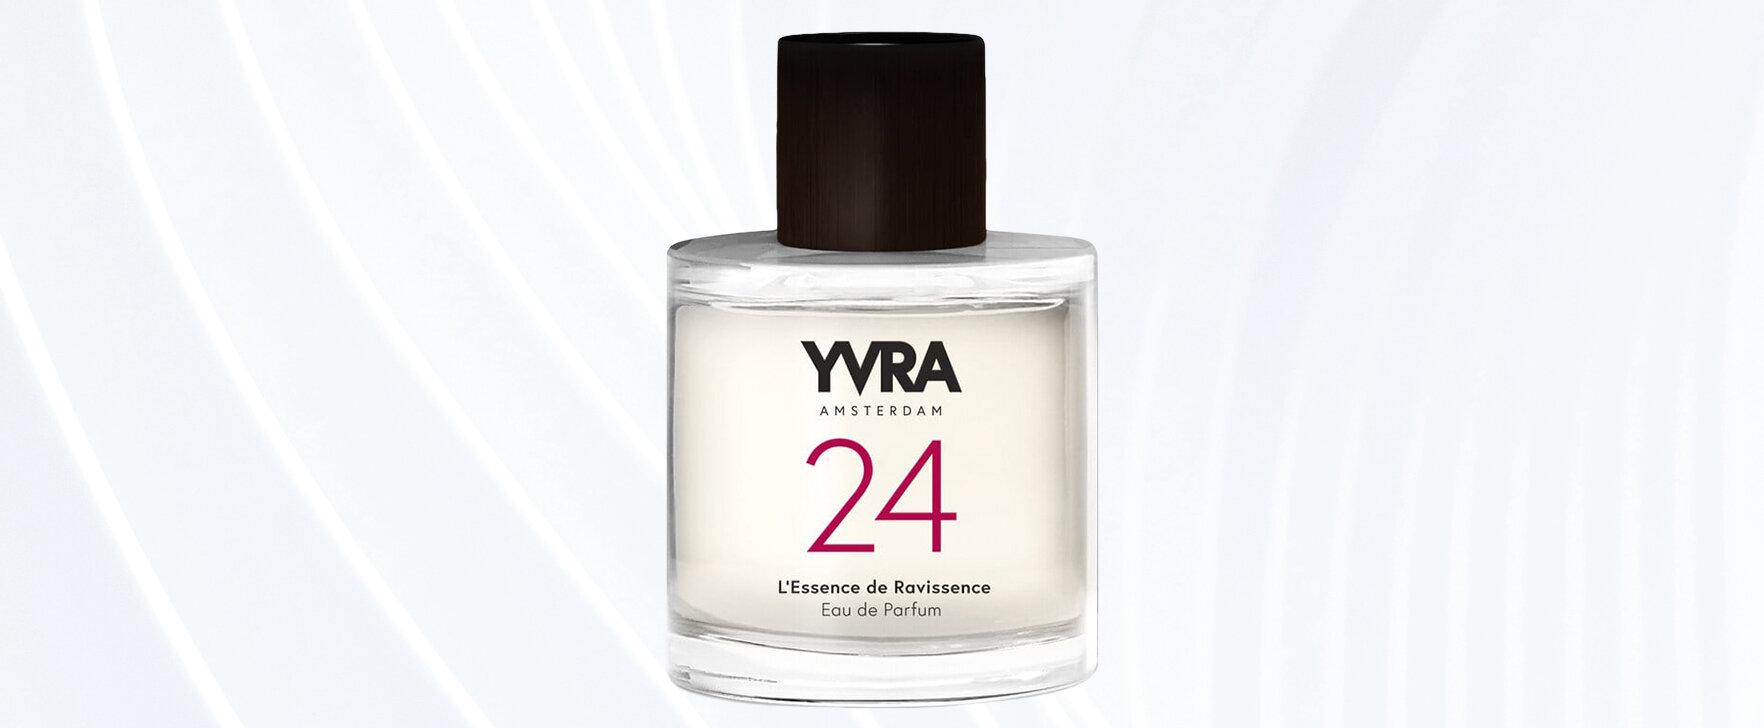 The New Eau de Parfum 24 - L'Essence de Ravissence: An Ode To Change